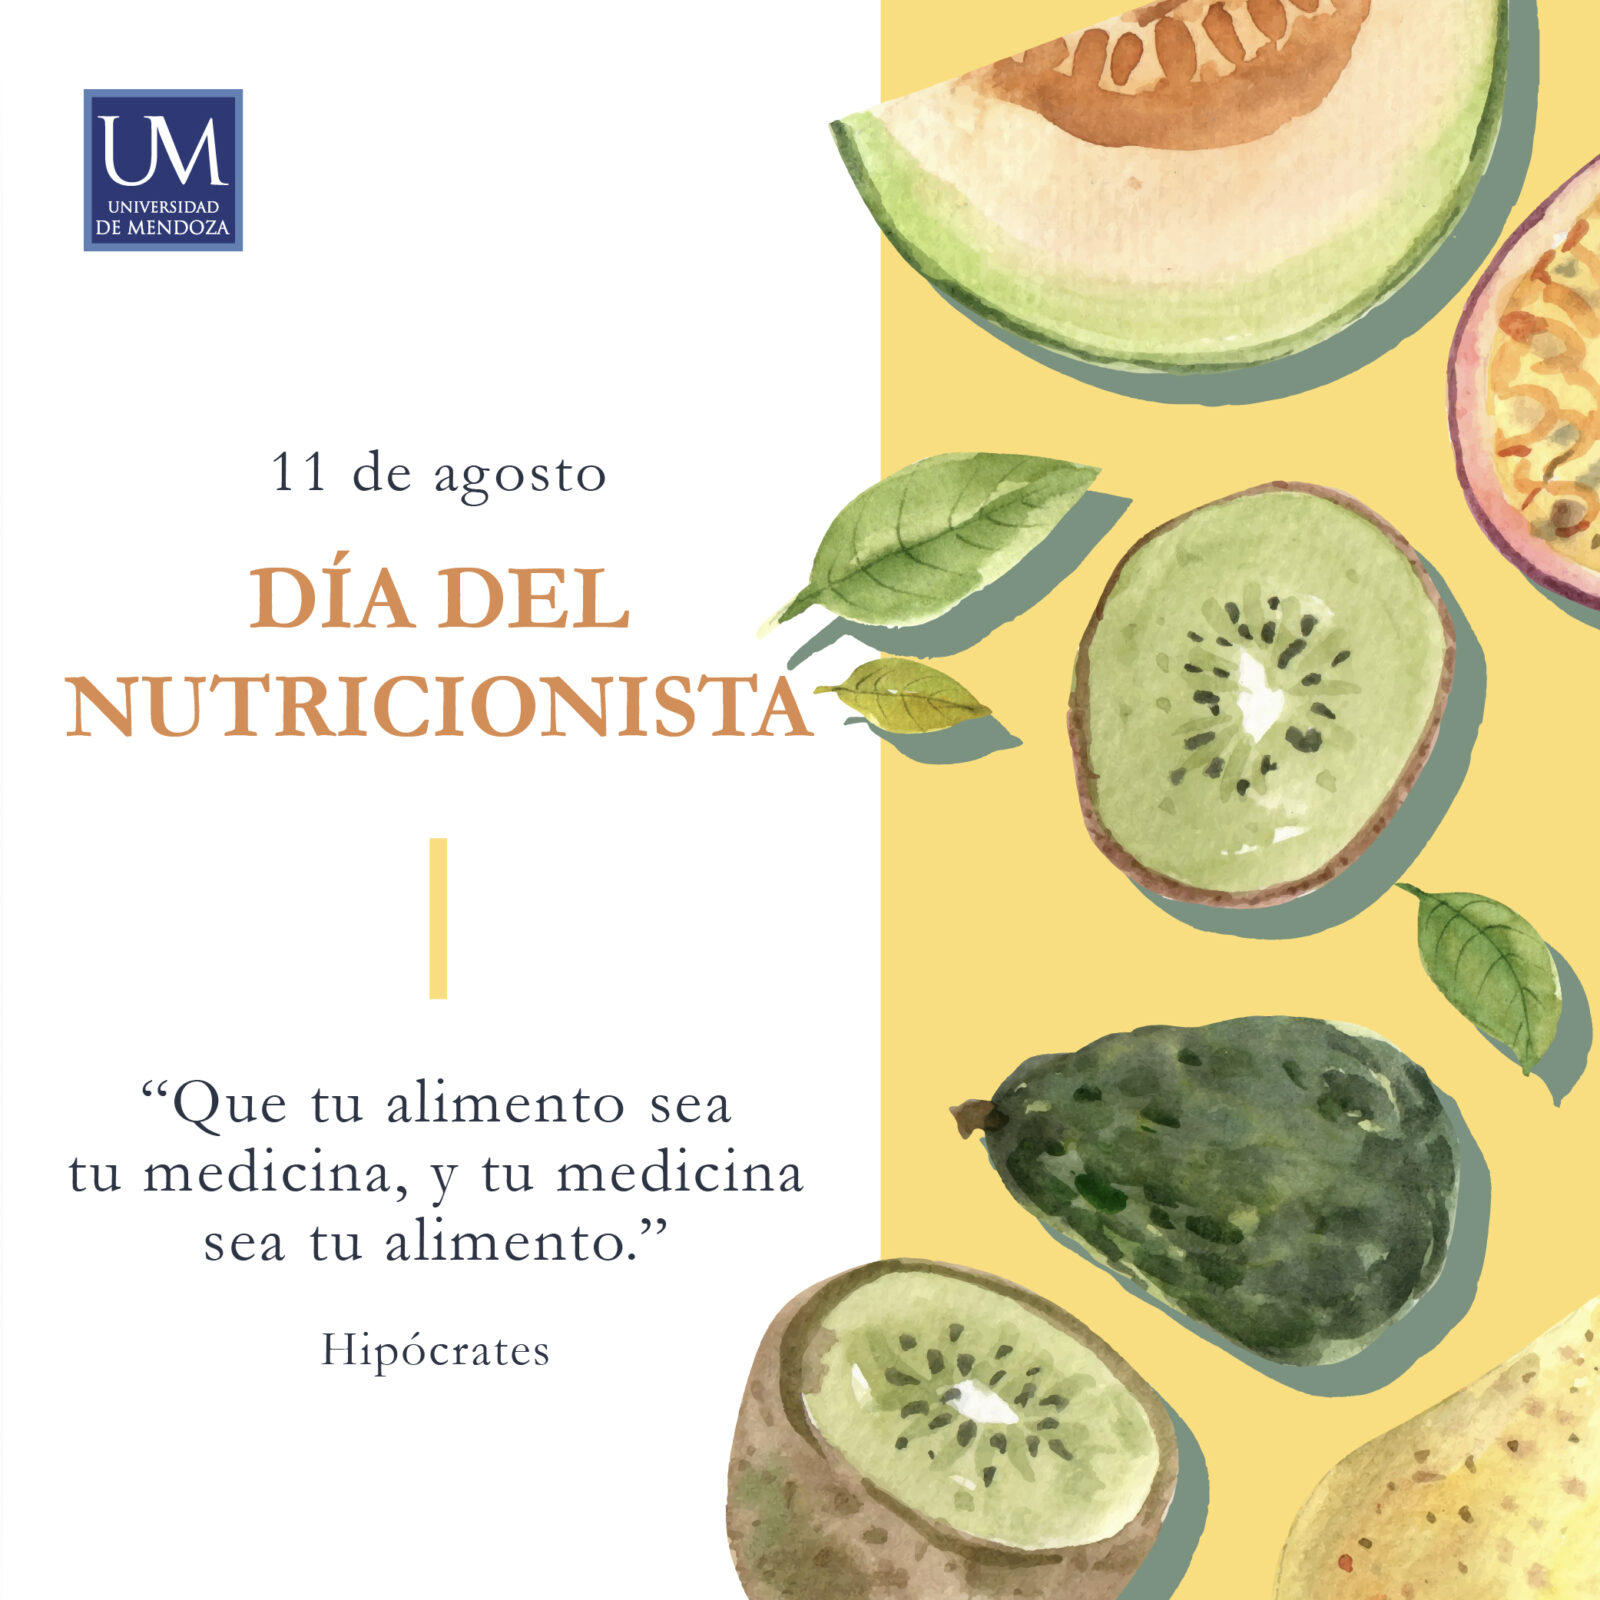 11 de agosto, Día del Nutricionista Universidad de Mendoza